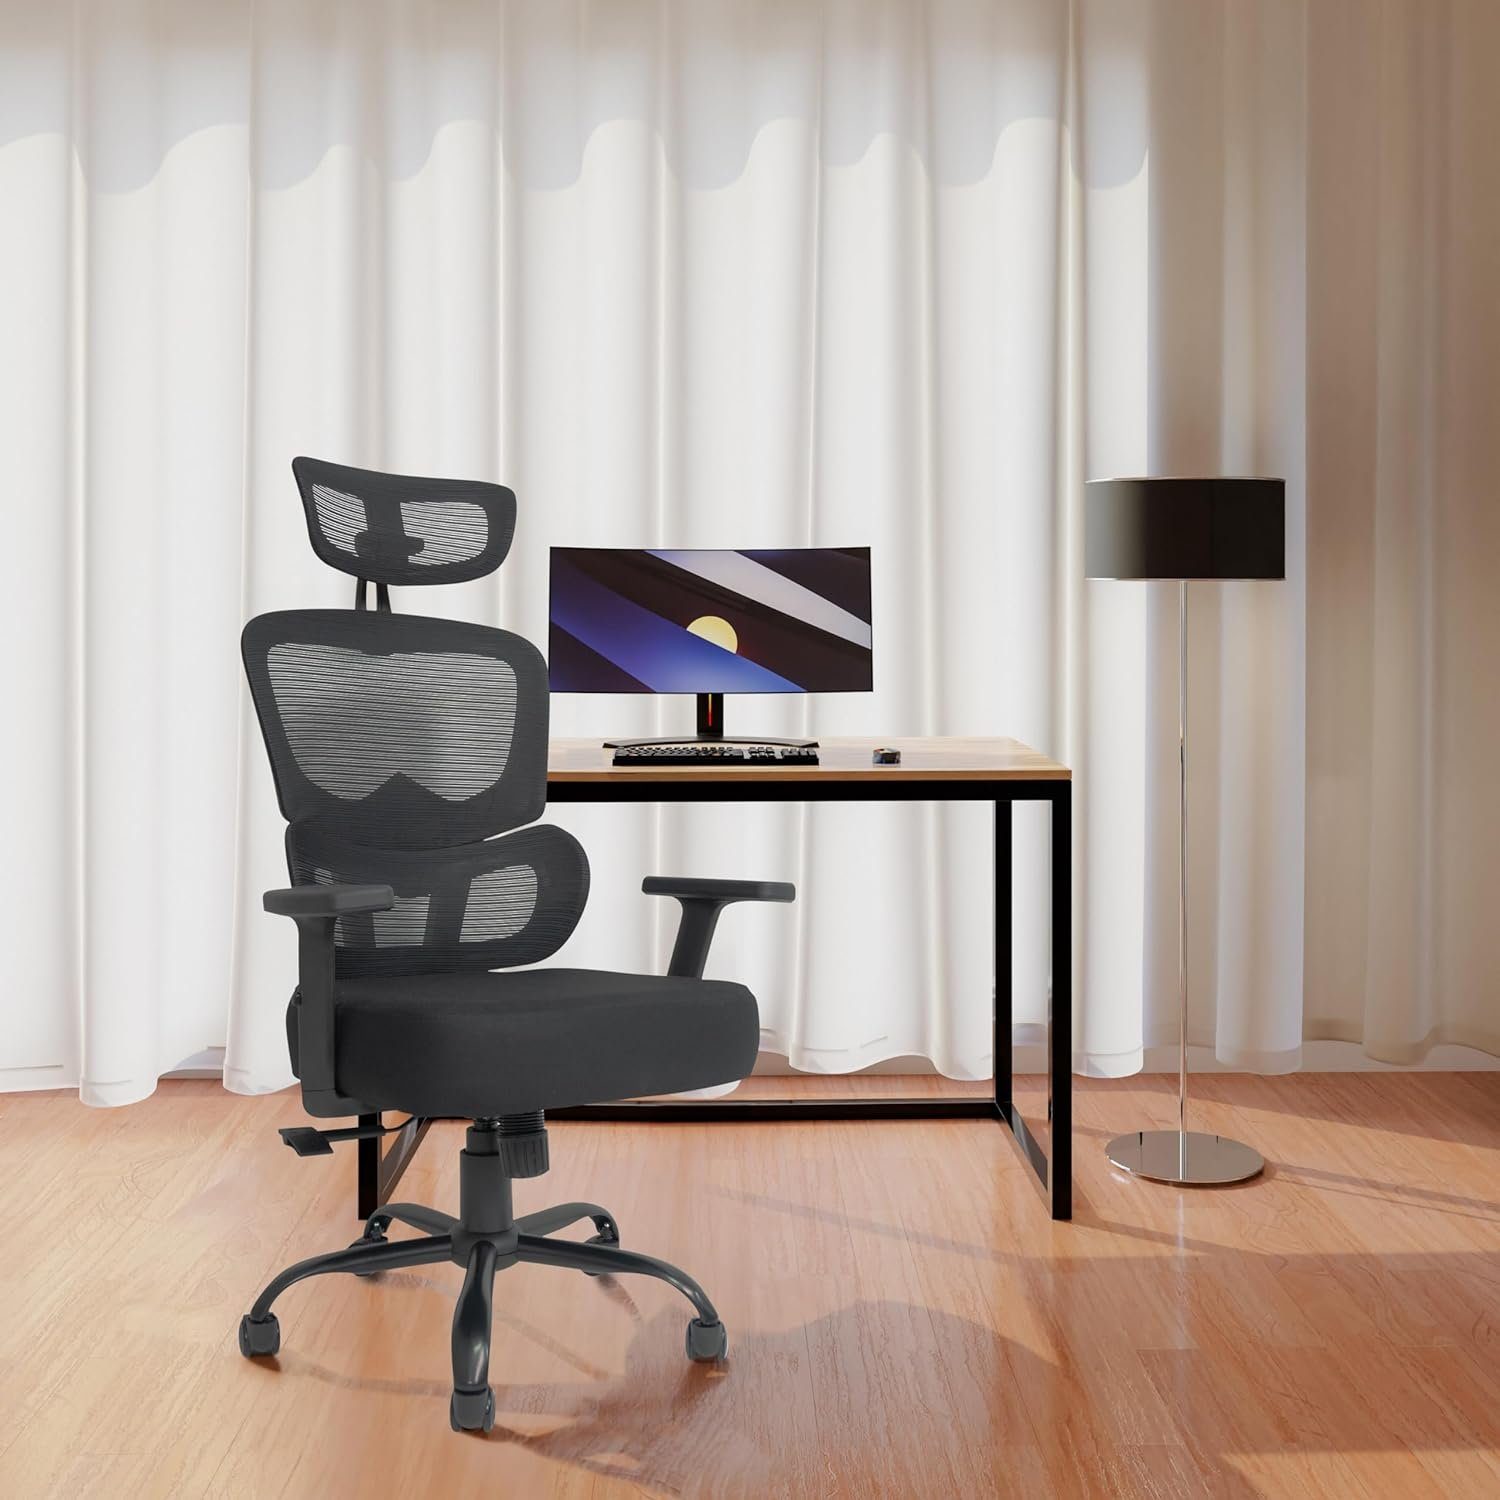 TITANO Bürostuhl (Bürostuhl ergonomisch: Schreibtischstuhl mit Höhe verstellbarem mit Sitz), - Bürostuhl Schreibtischstuhl Ergonomischer Verstellbarer